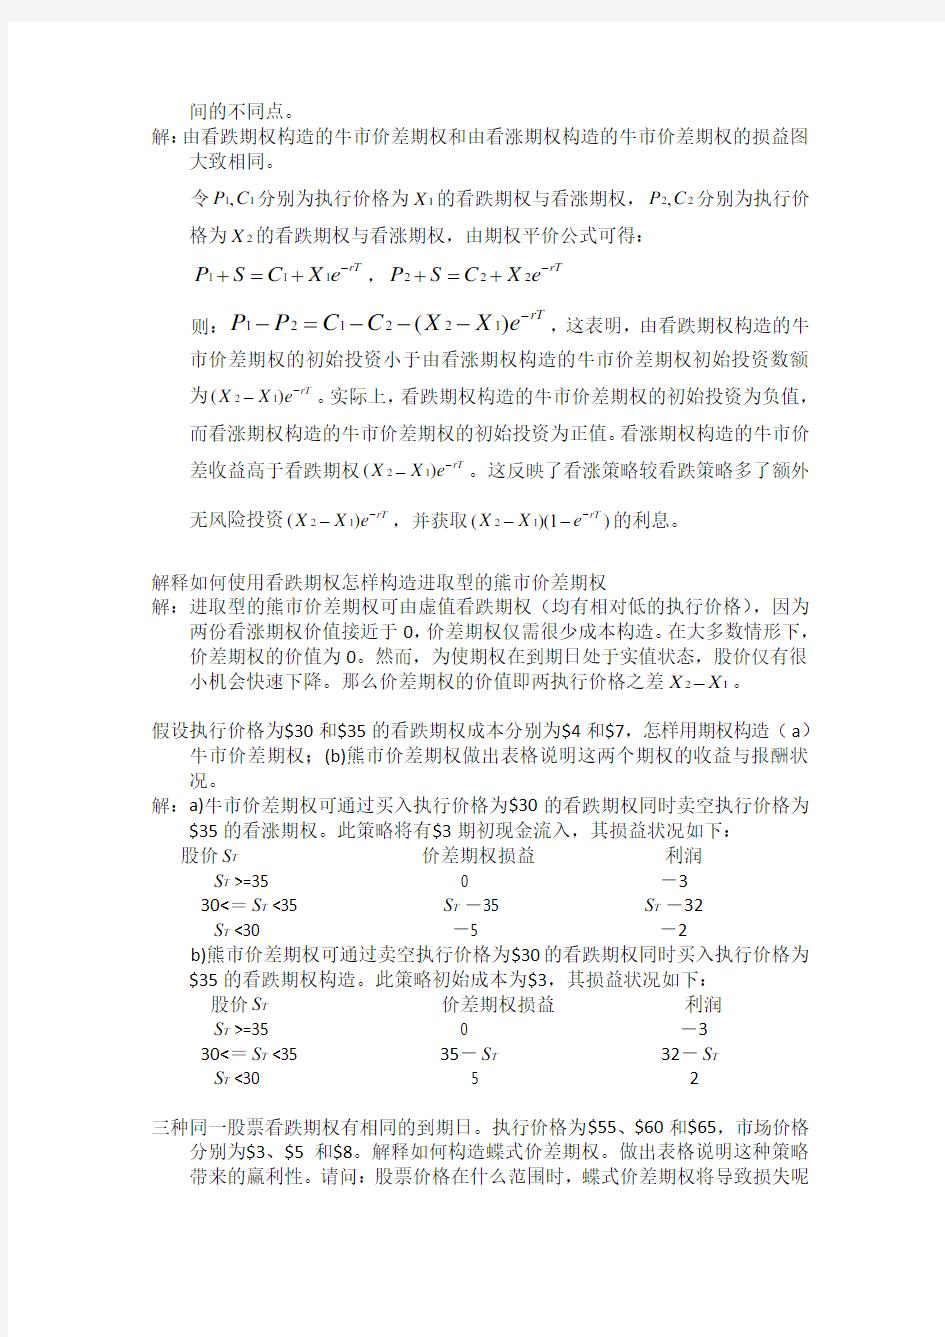 金融工程课后题8习题解答zhoujia(Lite)